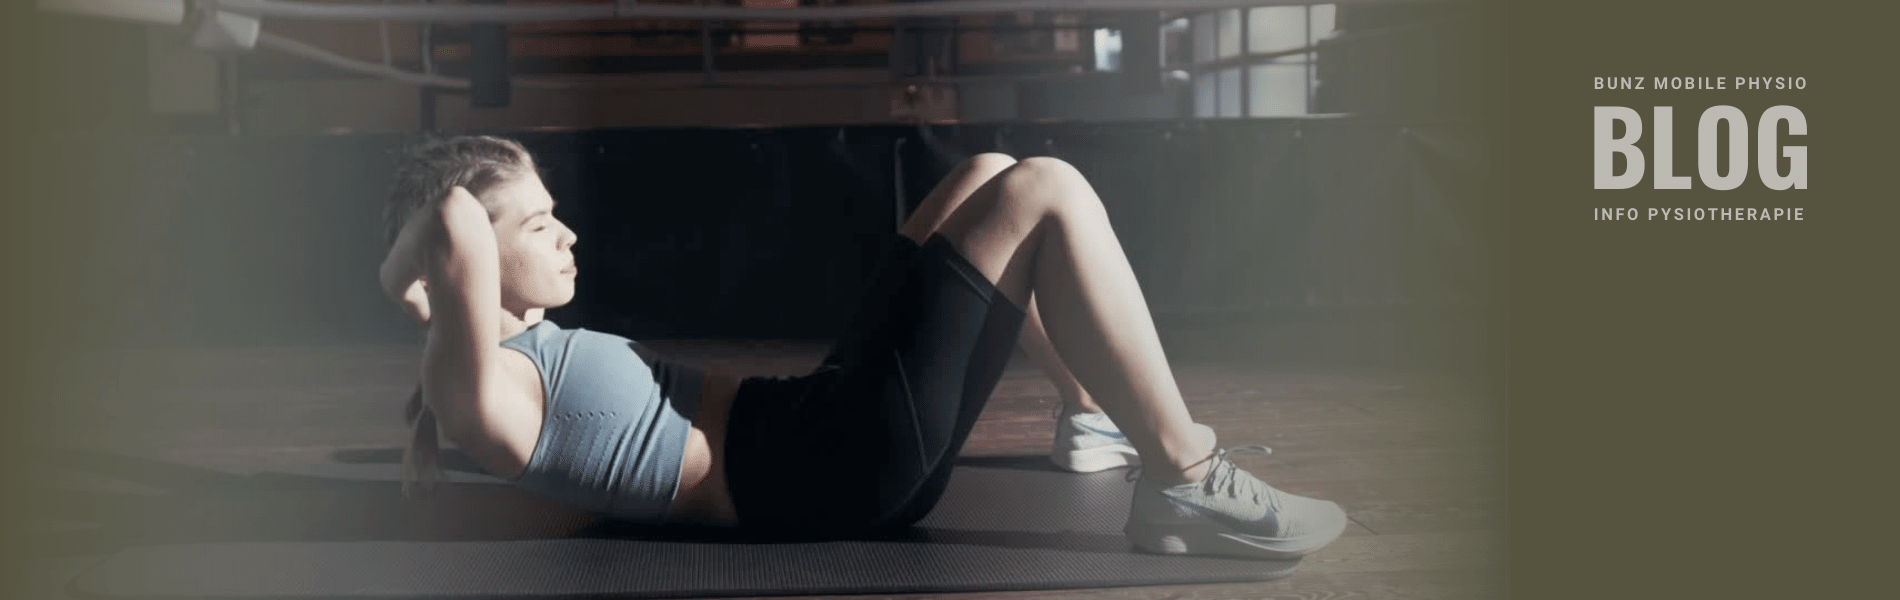 Junge Frau bleibt durch Sit-ups am Boden einer Sporthalle in Bewegung